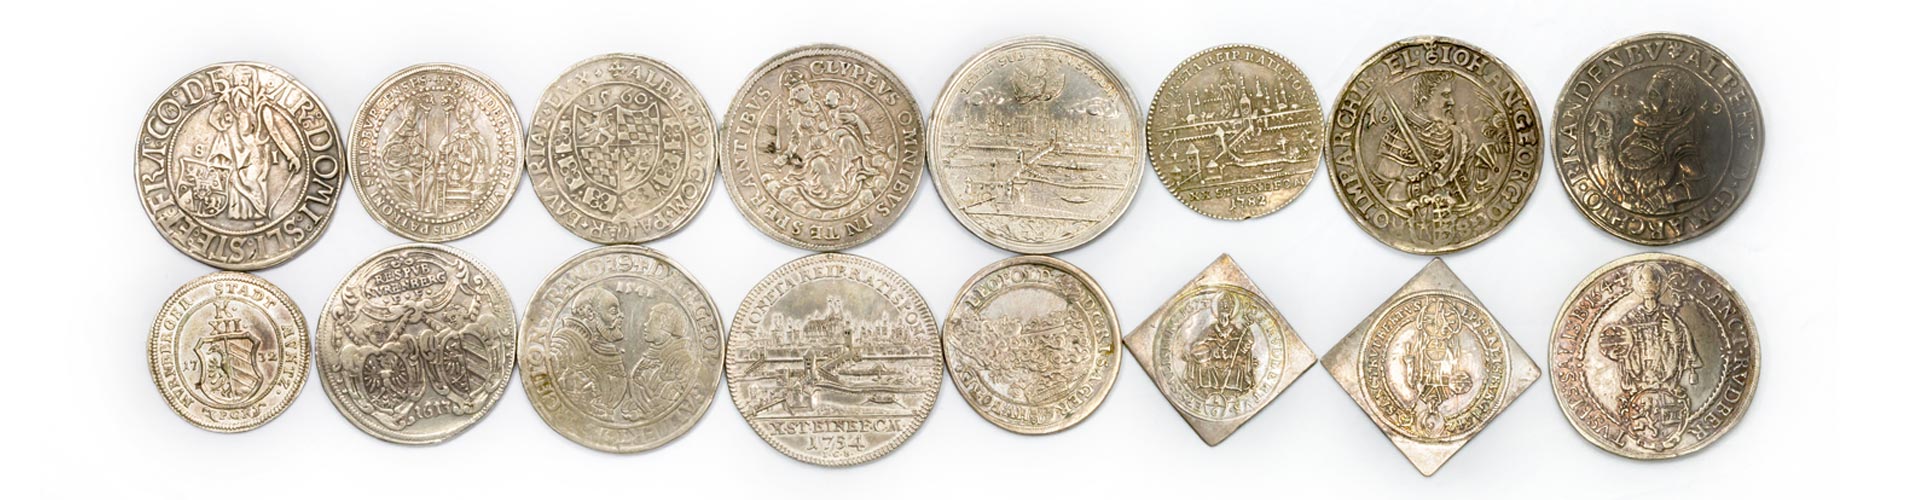 Sammlermünzen aus Silber